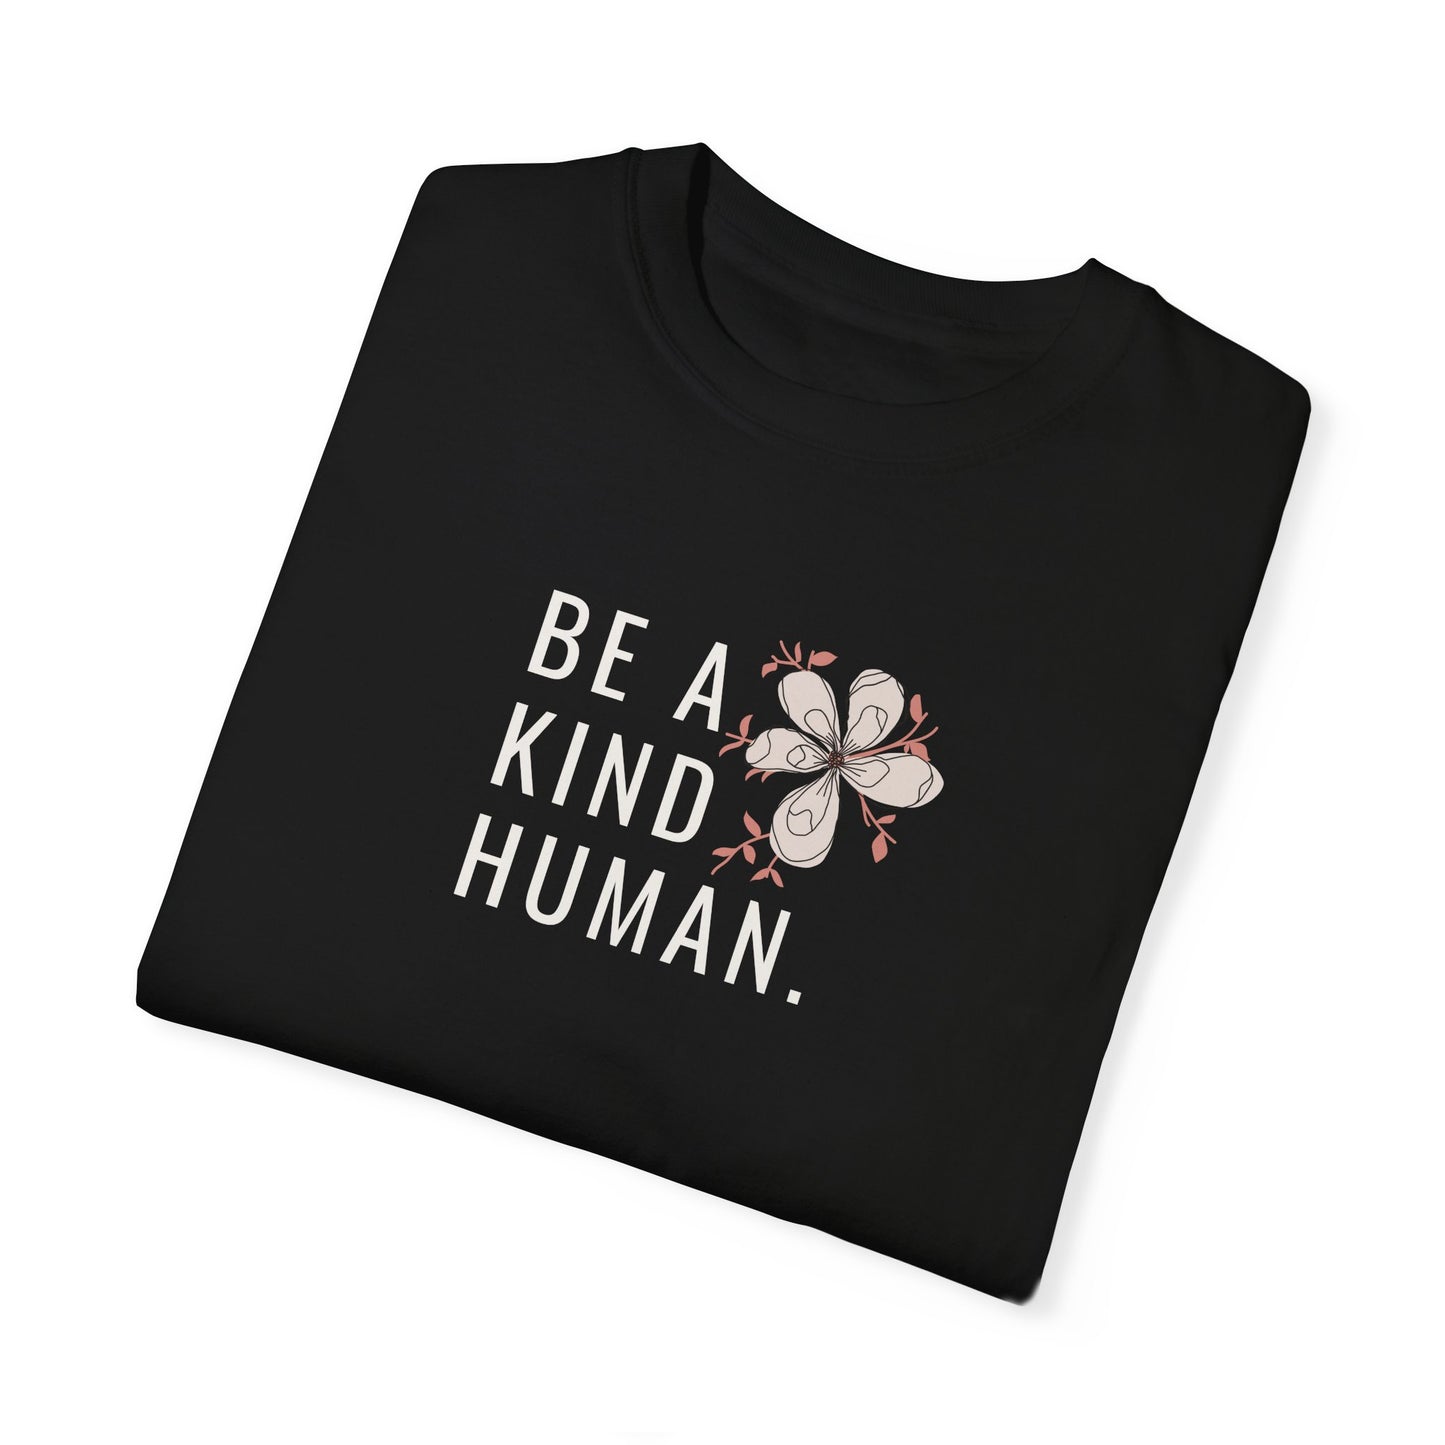 Be a kind Human